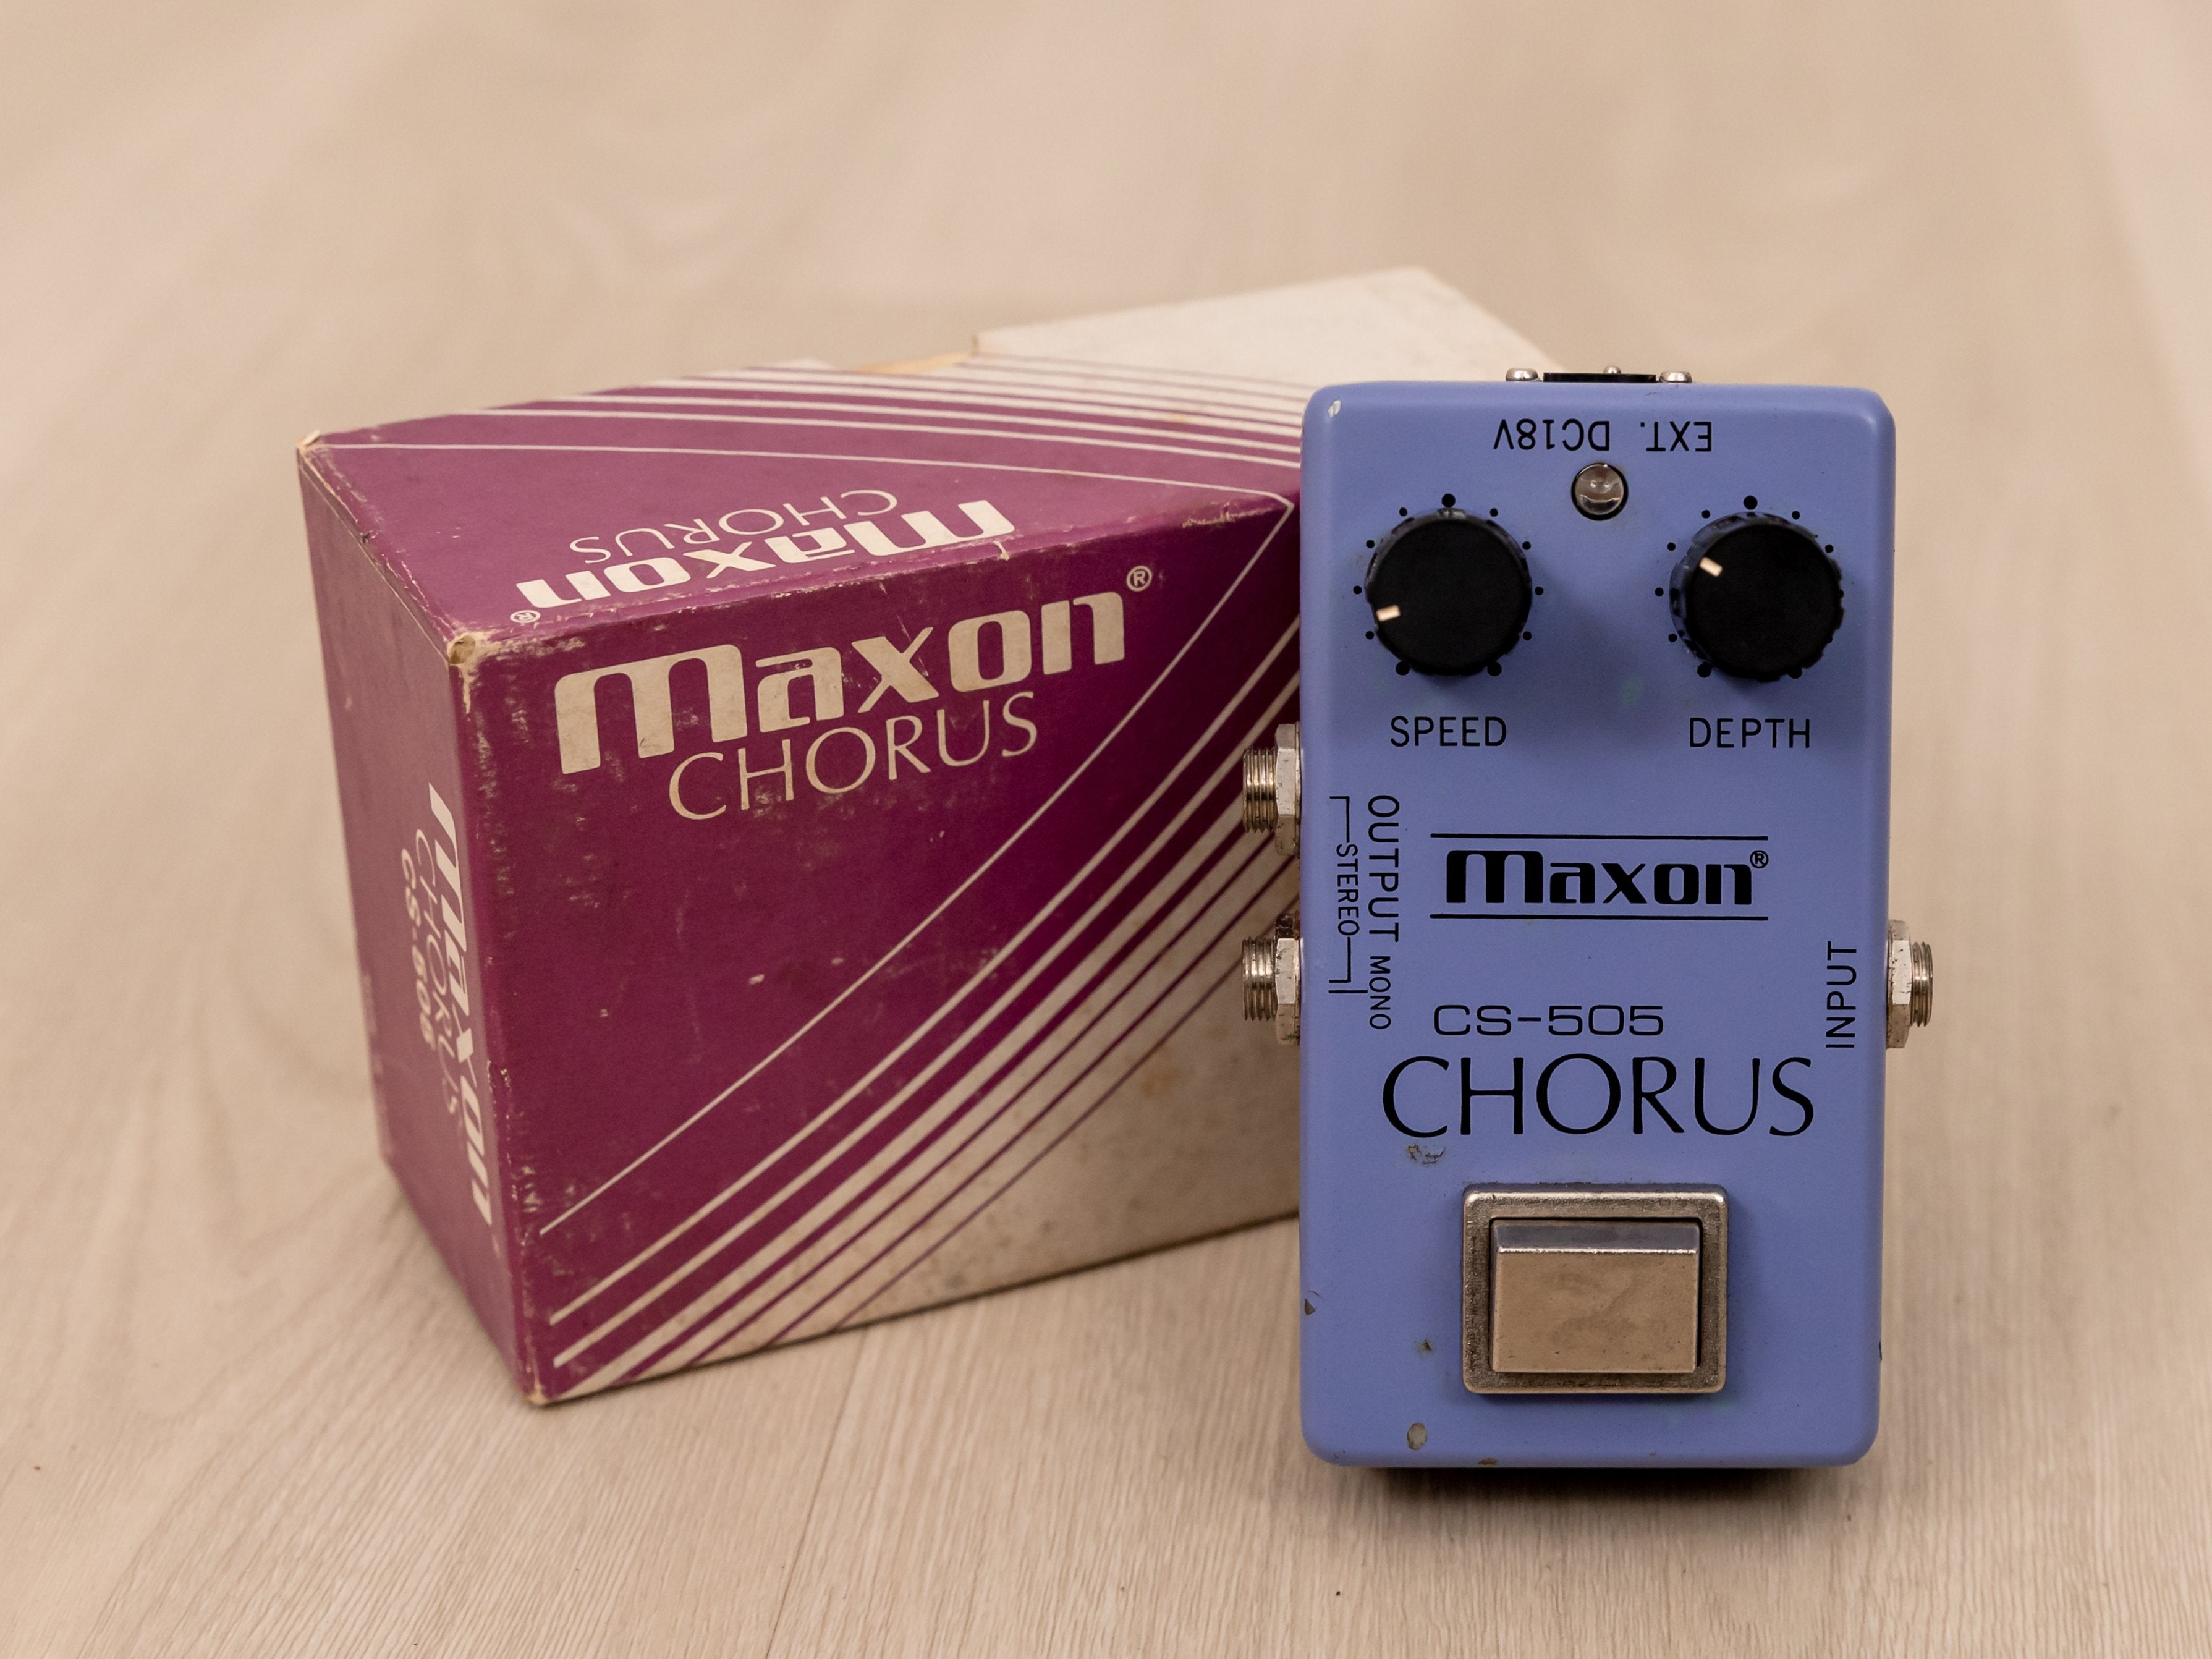 1980 Maxon CS-505 Chorus Narrow Box Vintage Analog Guitar Effects Pedal 18v w/ Box, Ibanez